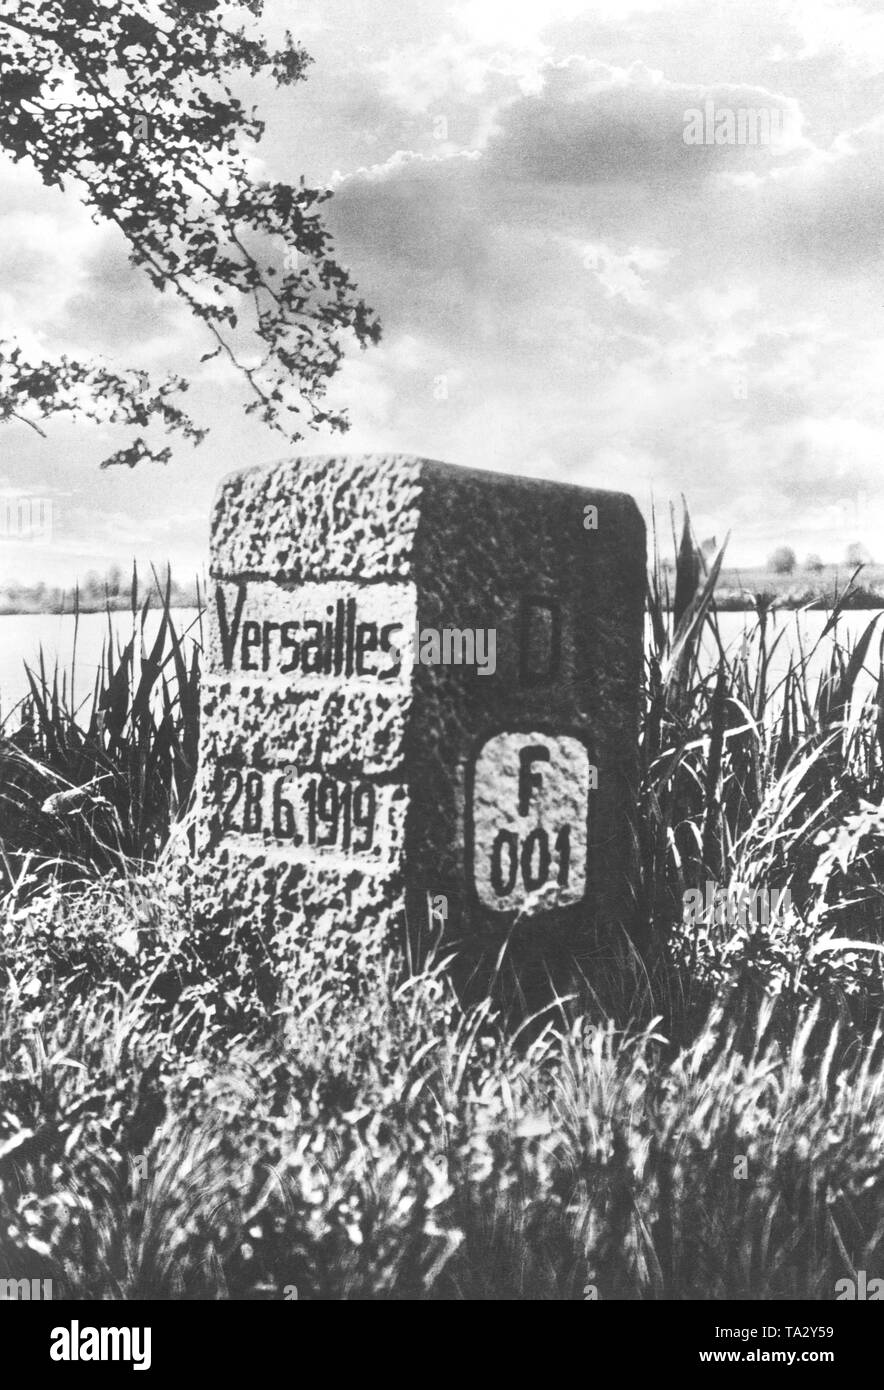 Das Symbol des neuen deutsch-polnischen Grenze wurde diese Grenze Stein in Schneidemühl. Es trägt die Inschrift "Versailles 28.6.1919". Stockfoto